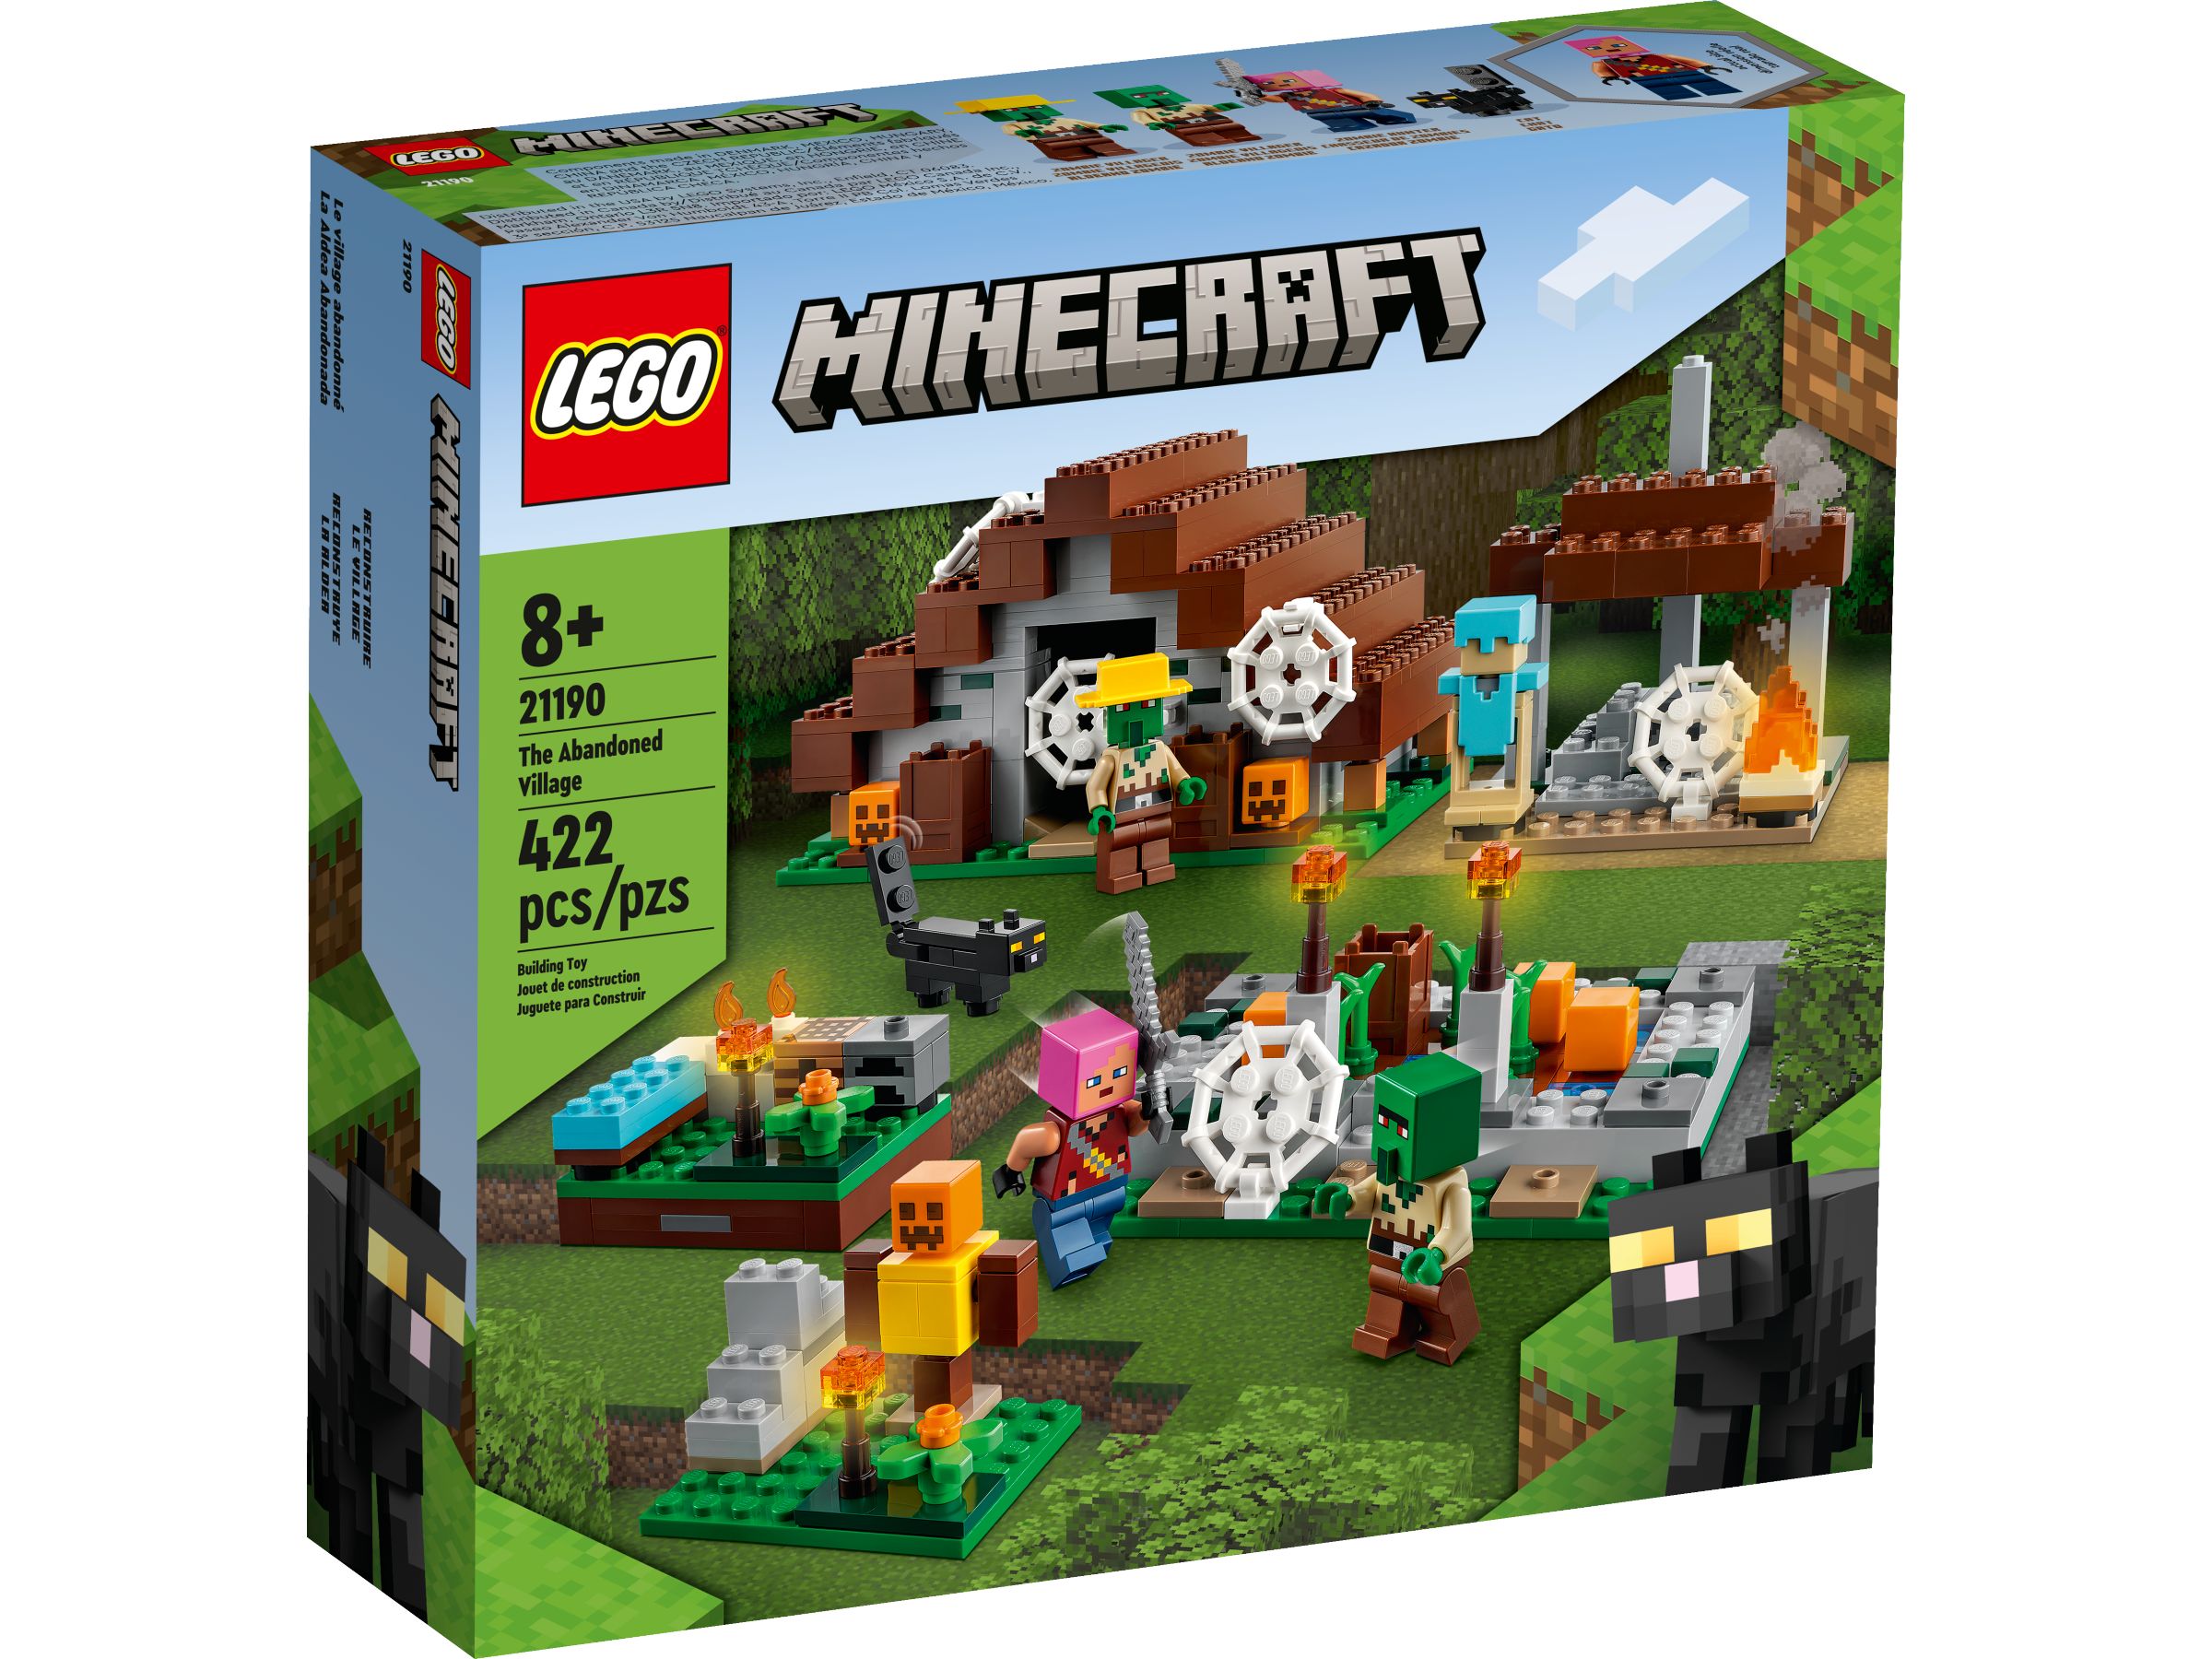 LEGO Minecraft 21190 The Abandoned Village LEGO_21190_alt1.jpg